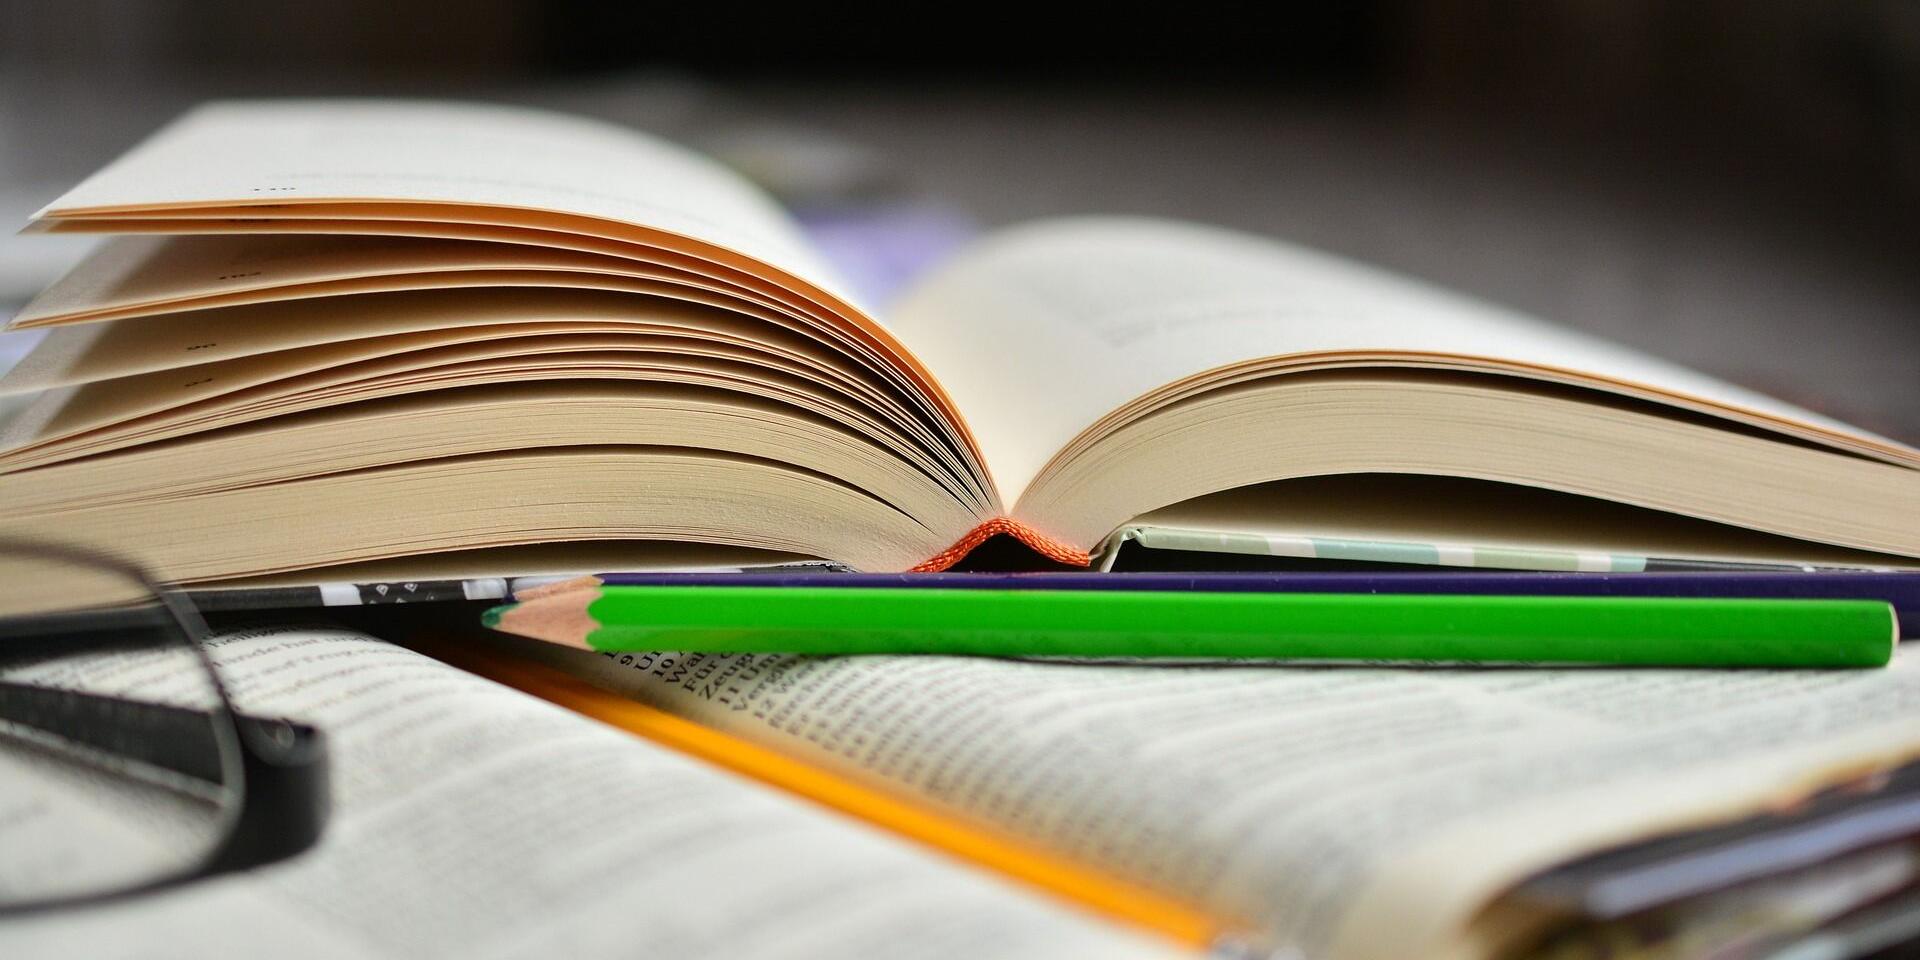 Ein aufgeschlagenes Buch, auf dem ein weiteres aufgeschlagendes Buch liegt, davor ist ein Bleistift, links am Rand ist ein Stück einer Brille zu sehen.